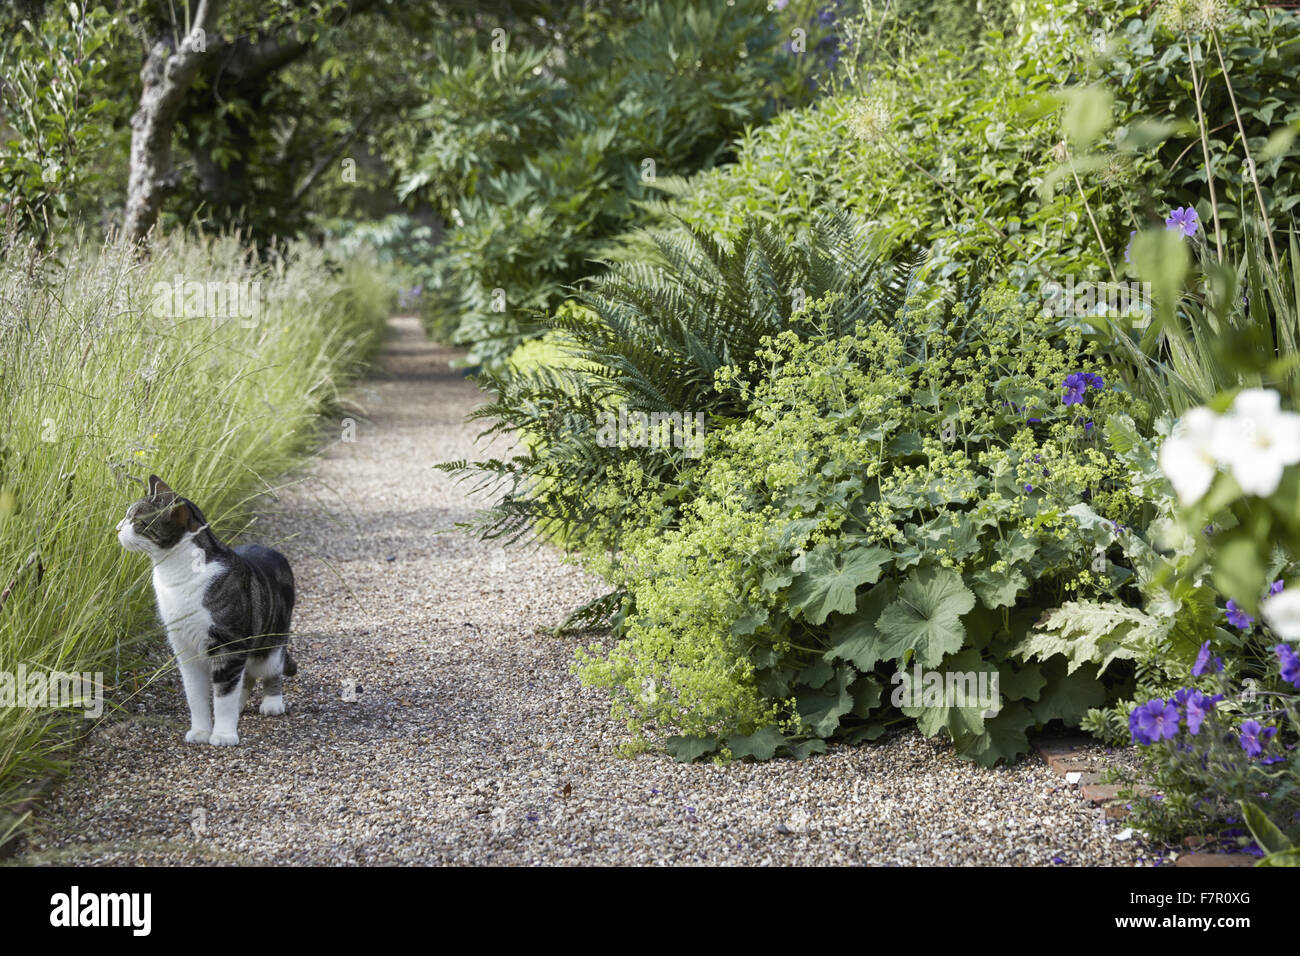 Katze im Garten am Fenton House and Garden, London. Fenton House wurde im Jahre 1686 erbaut und ist gefüllt mit Weltklasse dekorative und bildender Kunst-Sammlungen. Die Gärten sind ein Obstgarten, Gemüsegarten, Rosengarten und formale Terrassen und Rasenflächen. Stockfoto